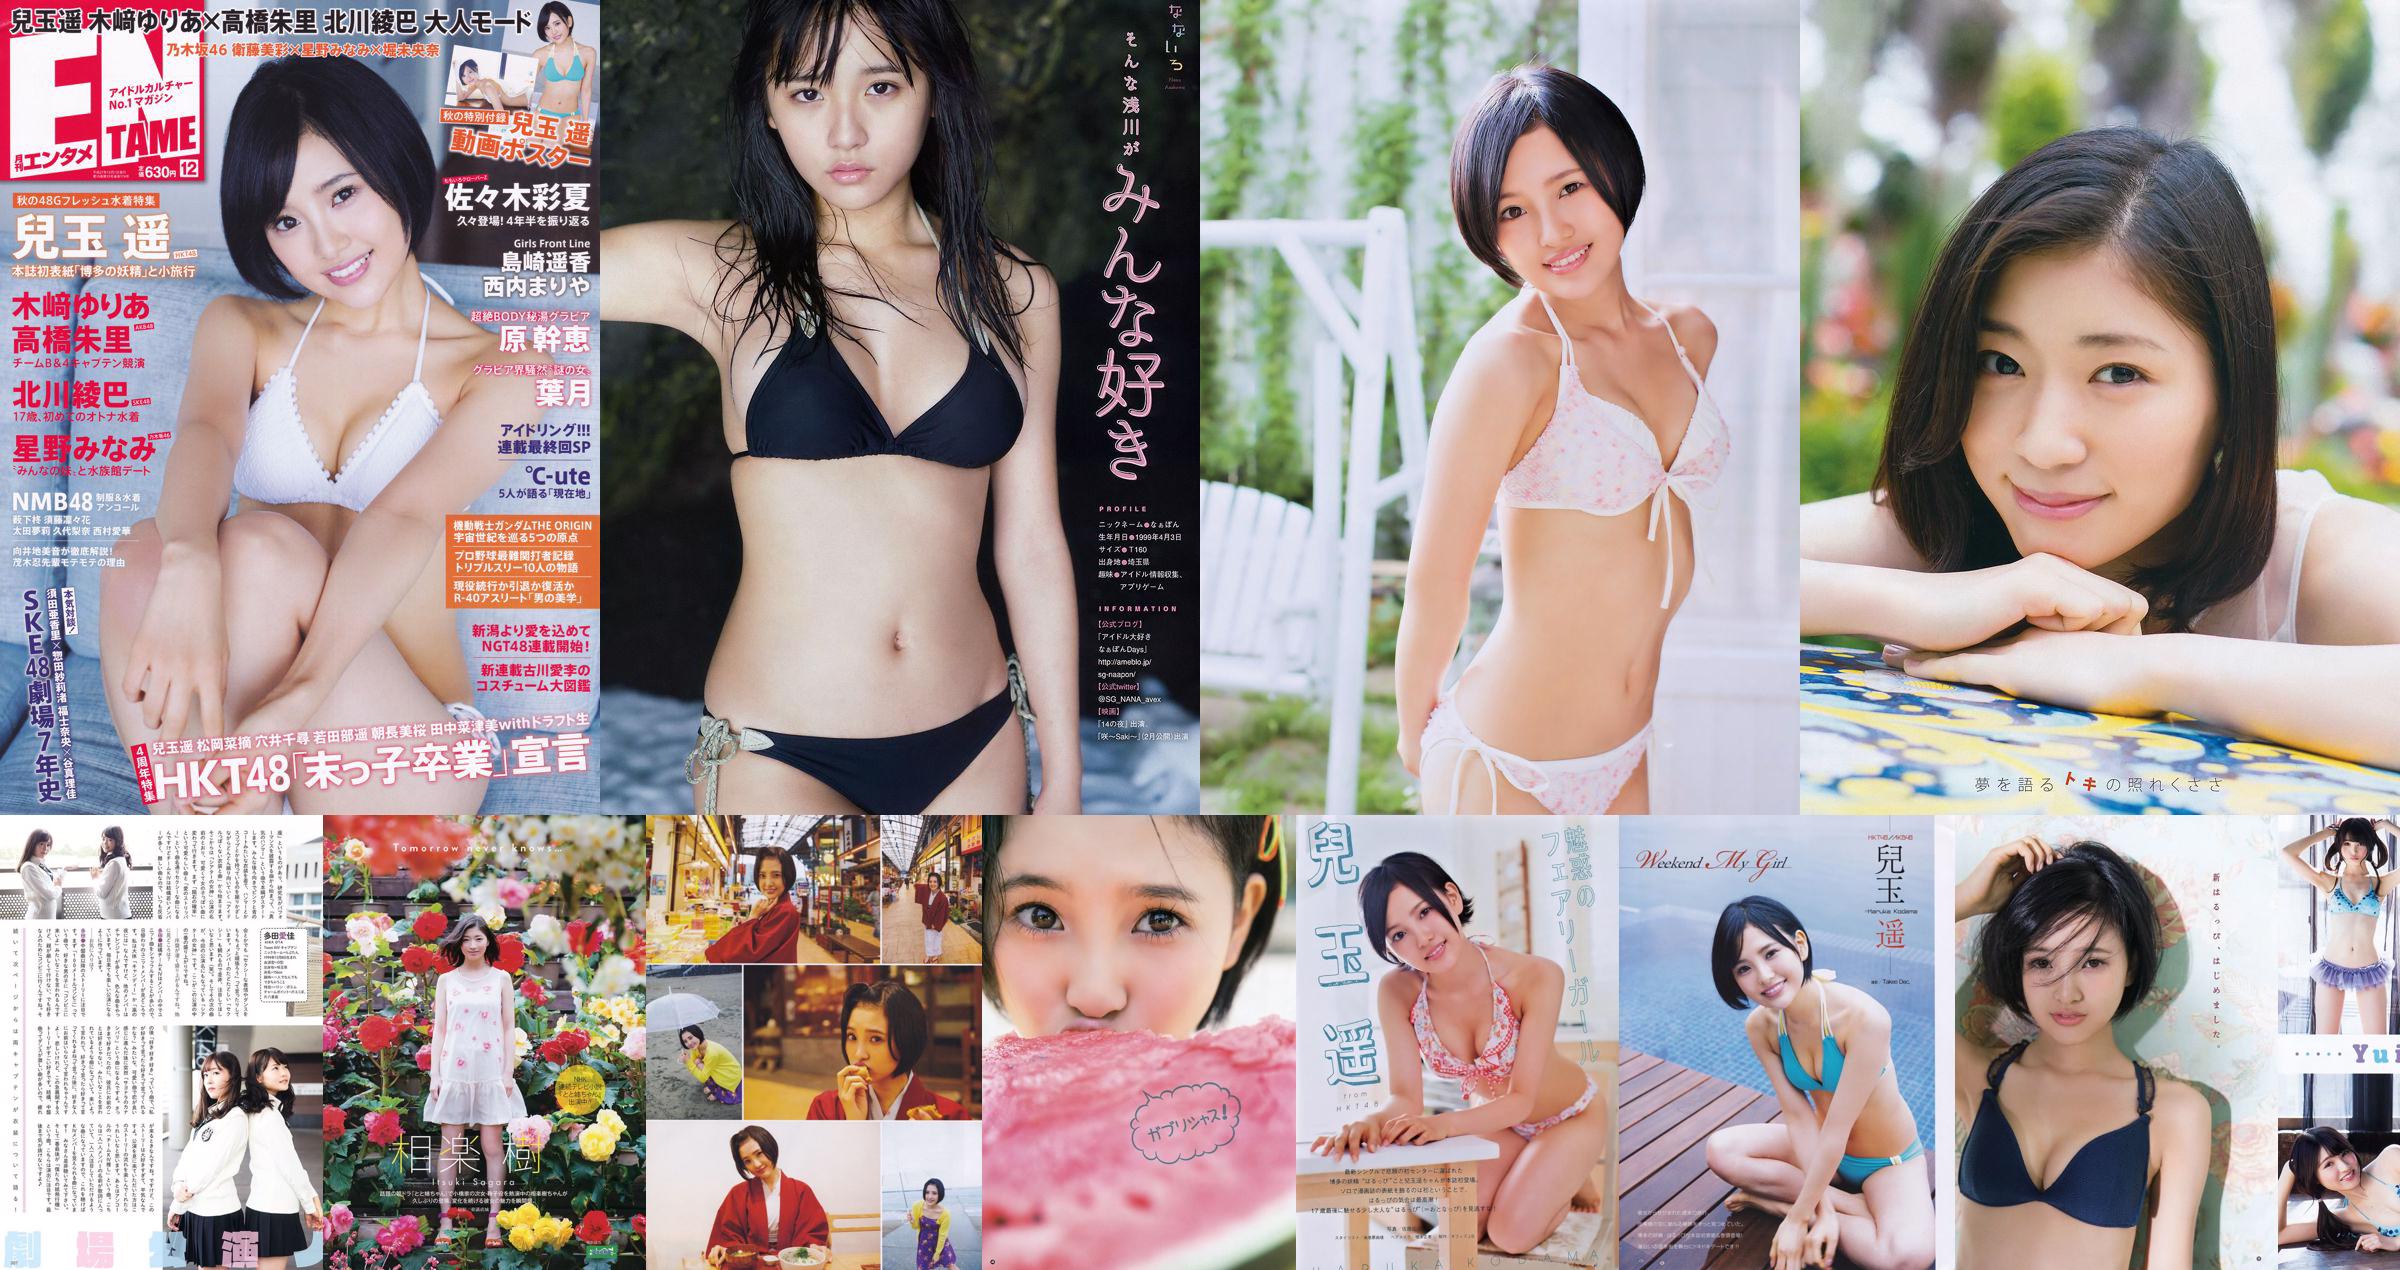 [Young Gangan] Haruka Kodama Rion 2015 No.23 Photo Magazine No.0b4214 Page 3